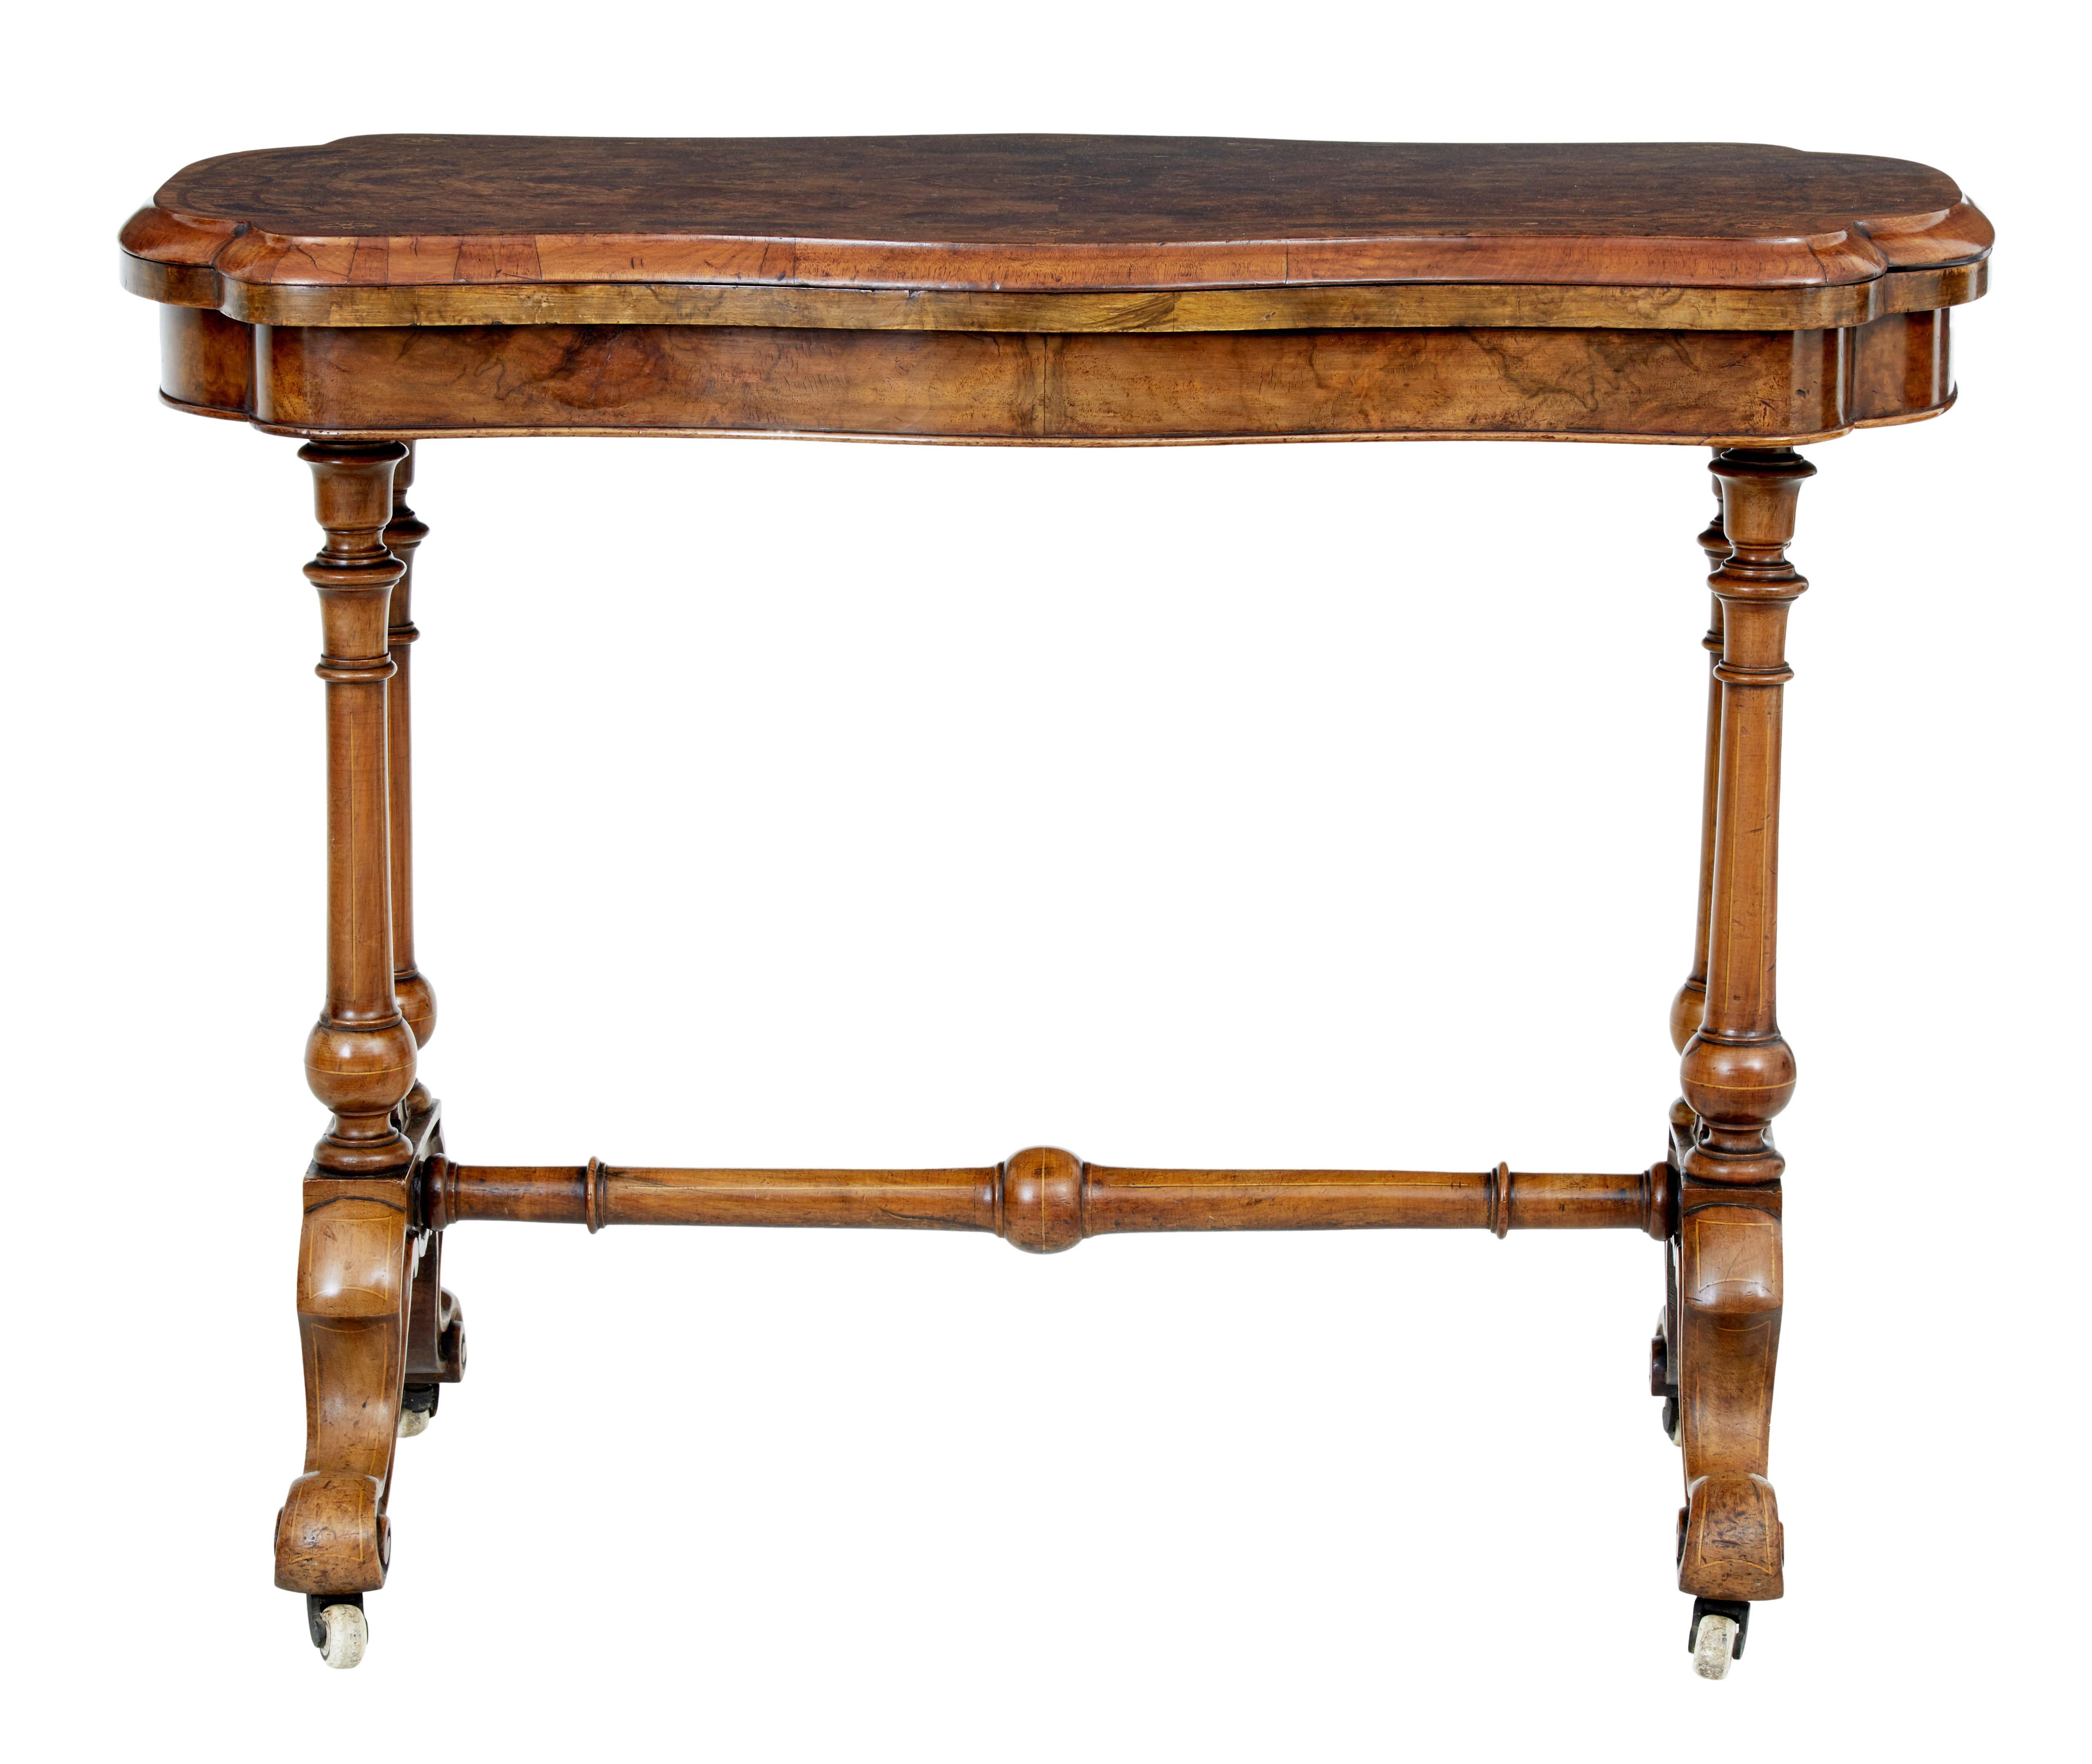 Dekorativer hoher viktorianischer Kartentisch aus Nussbaumholz um 1870.

Geformte Platte aus Wurzelnussholz mit eingelegten Mustern und Kreuzbanddekor.  Der Deckel ist drehbar und gibt den Blick auf eine Ablagefläche und eine Spielfläche aus grünem